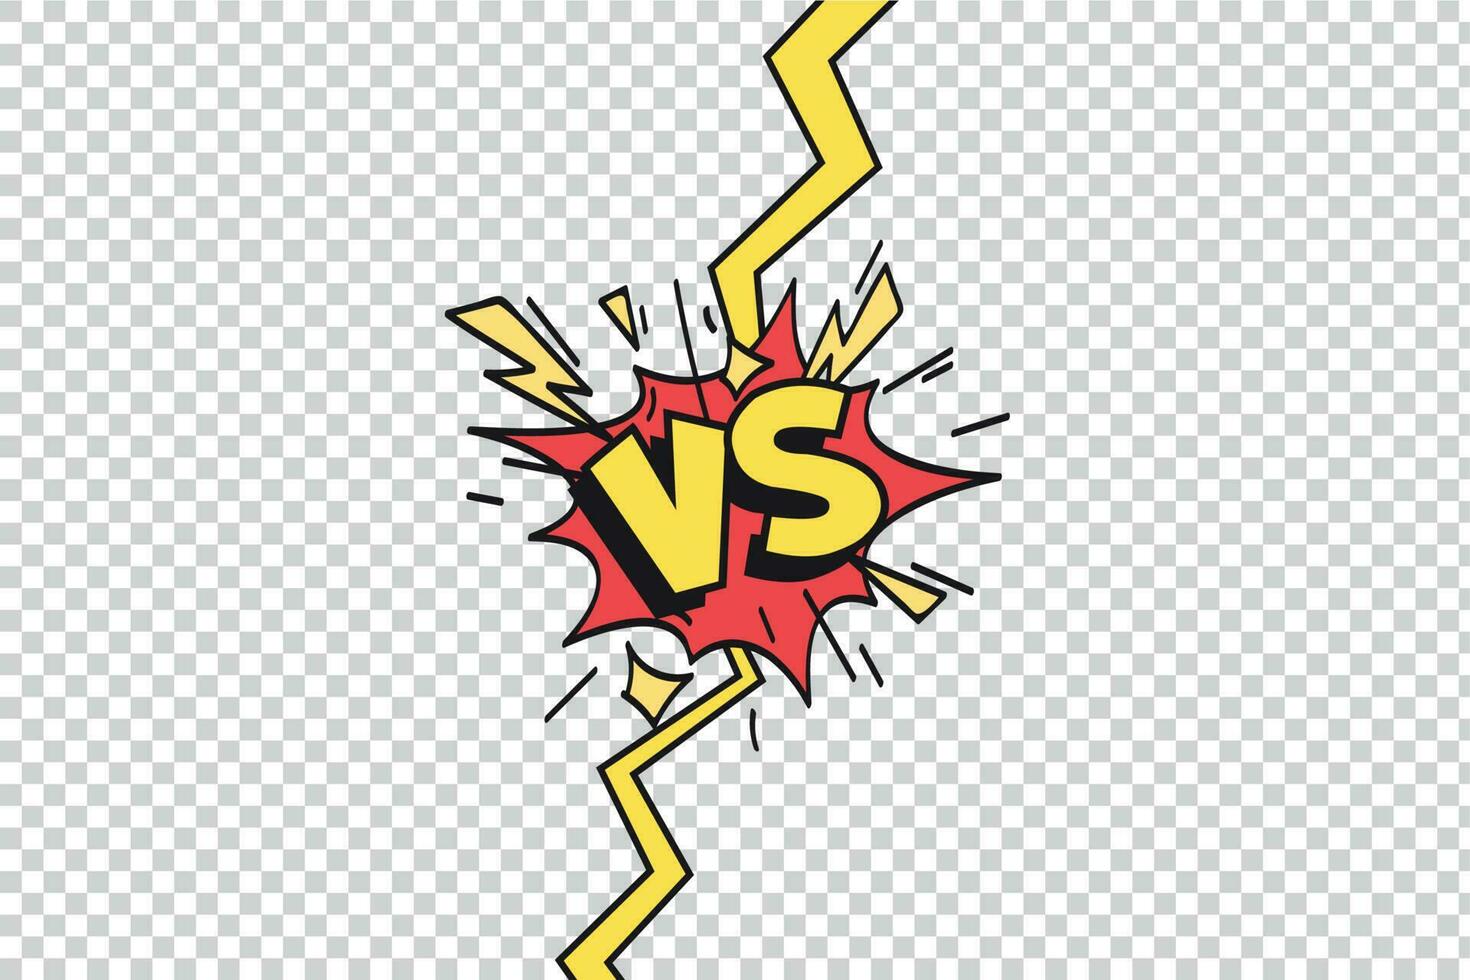 i fumetti vs telaio. contro fulmine raggio confine, comico combattente duello e combattimento confronto isolato cartone animato vettore sfondo